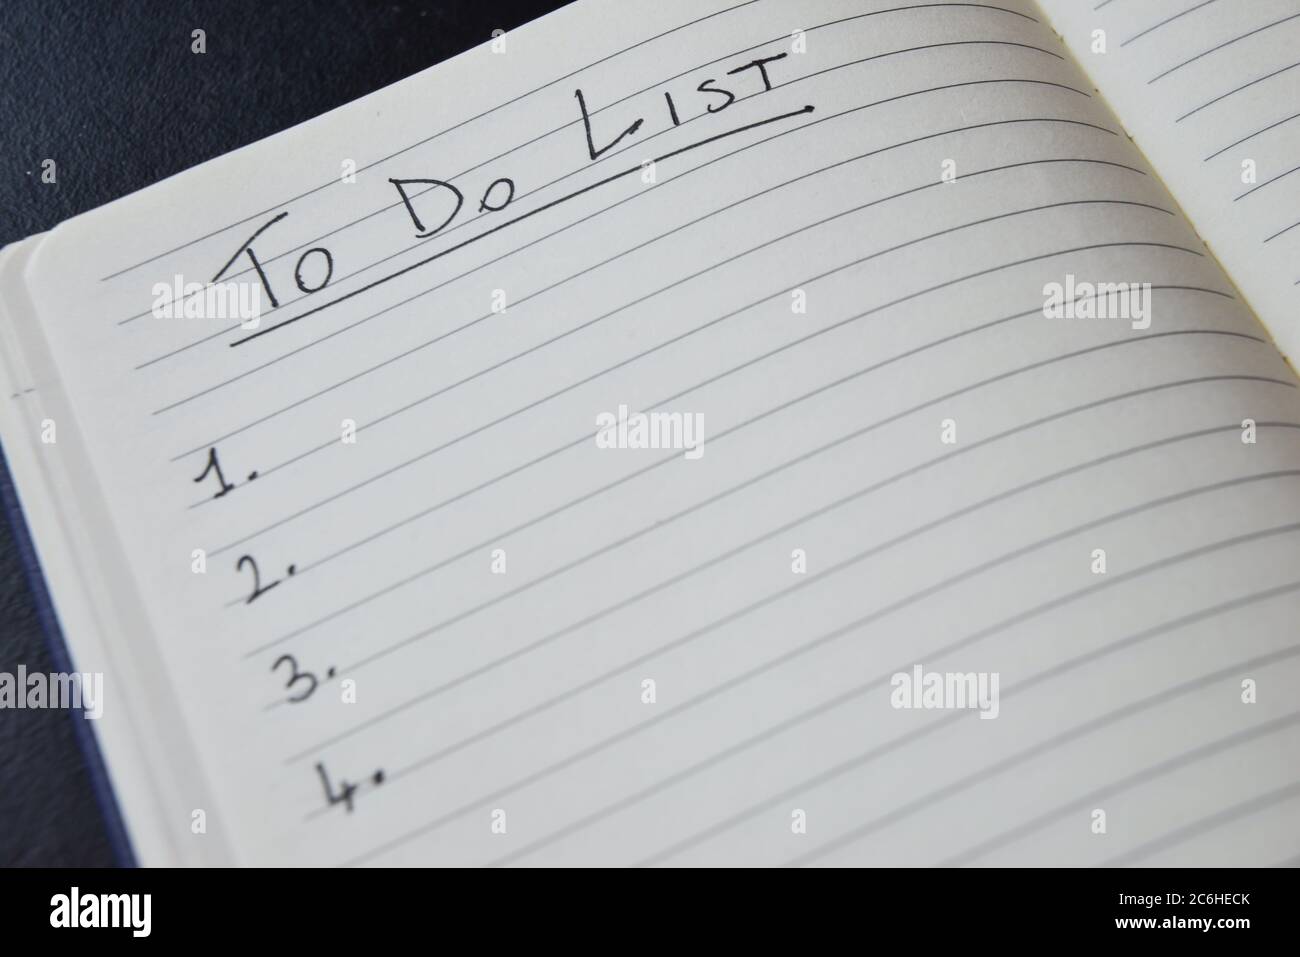 Liste der Dinge zu tun, in einem Notizbuch geschrieben Stockfoto